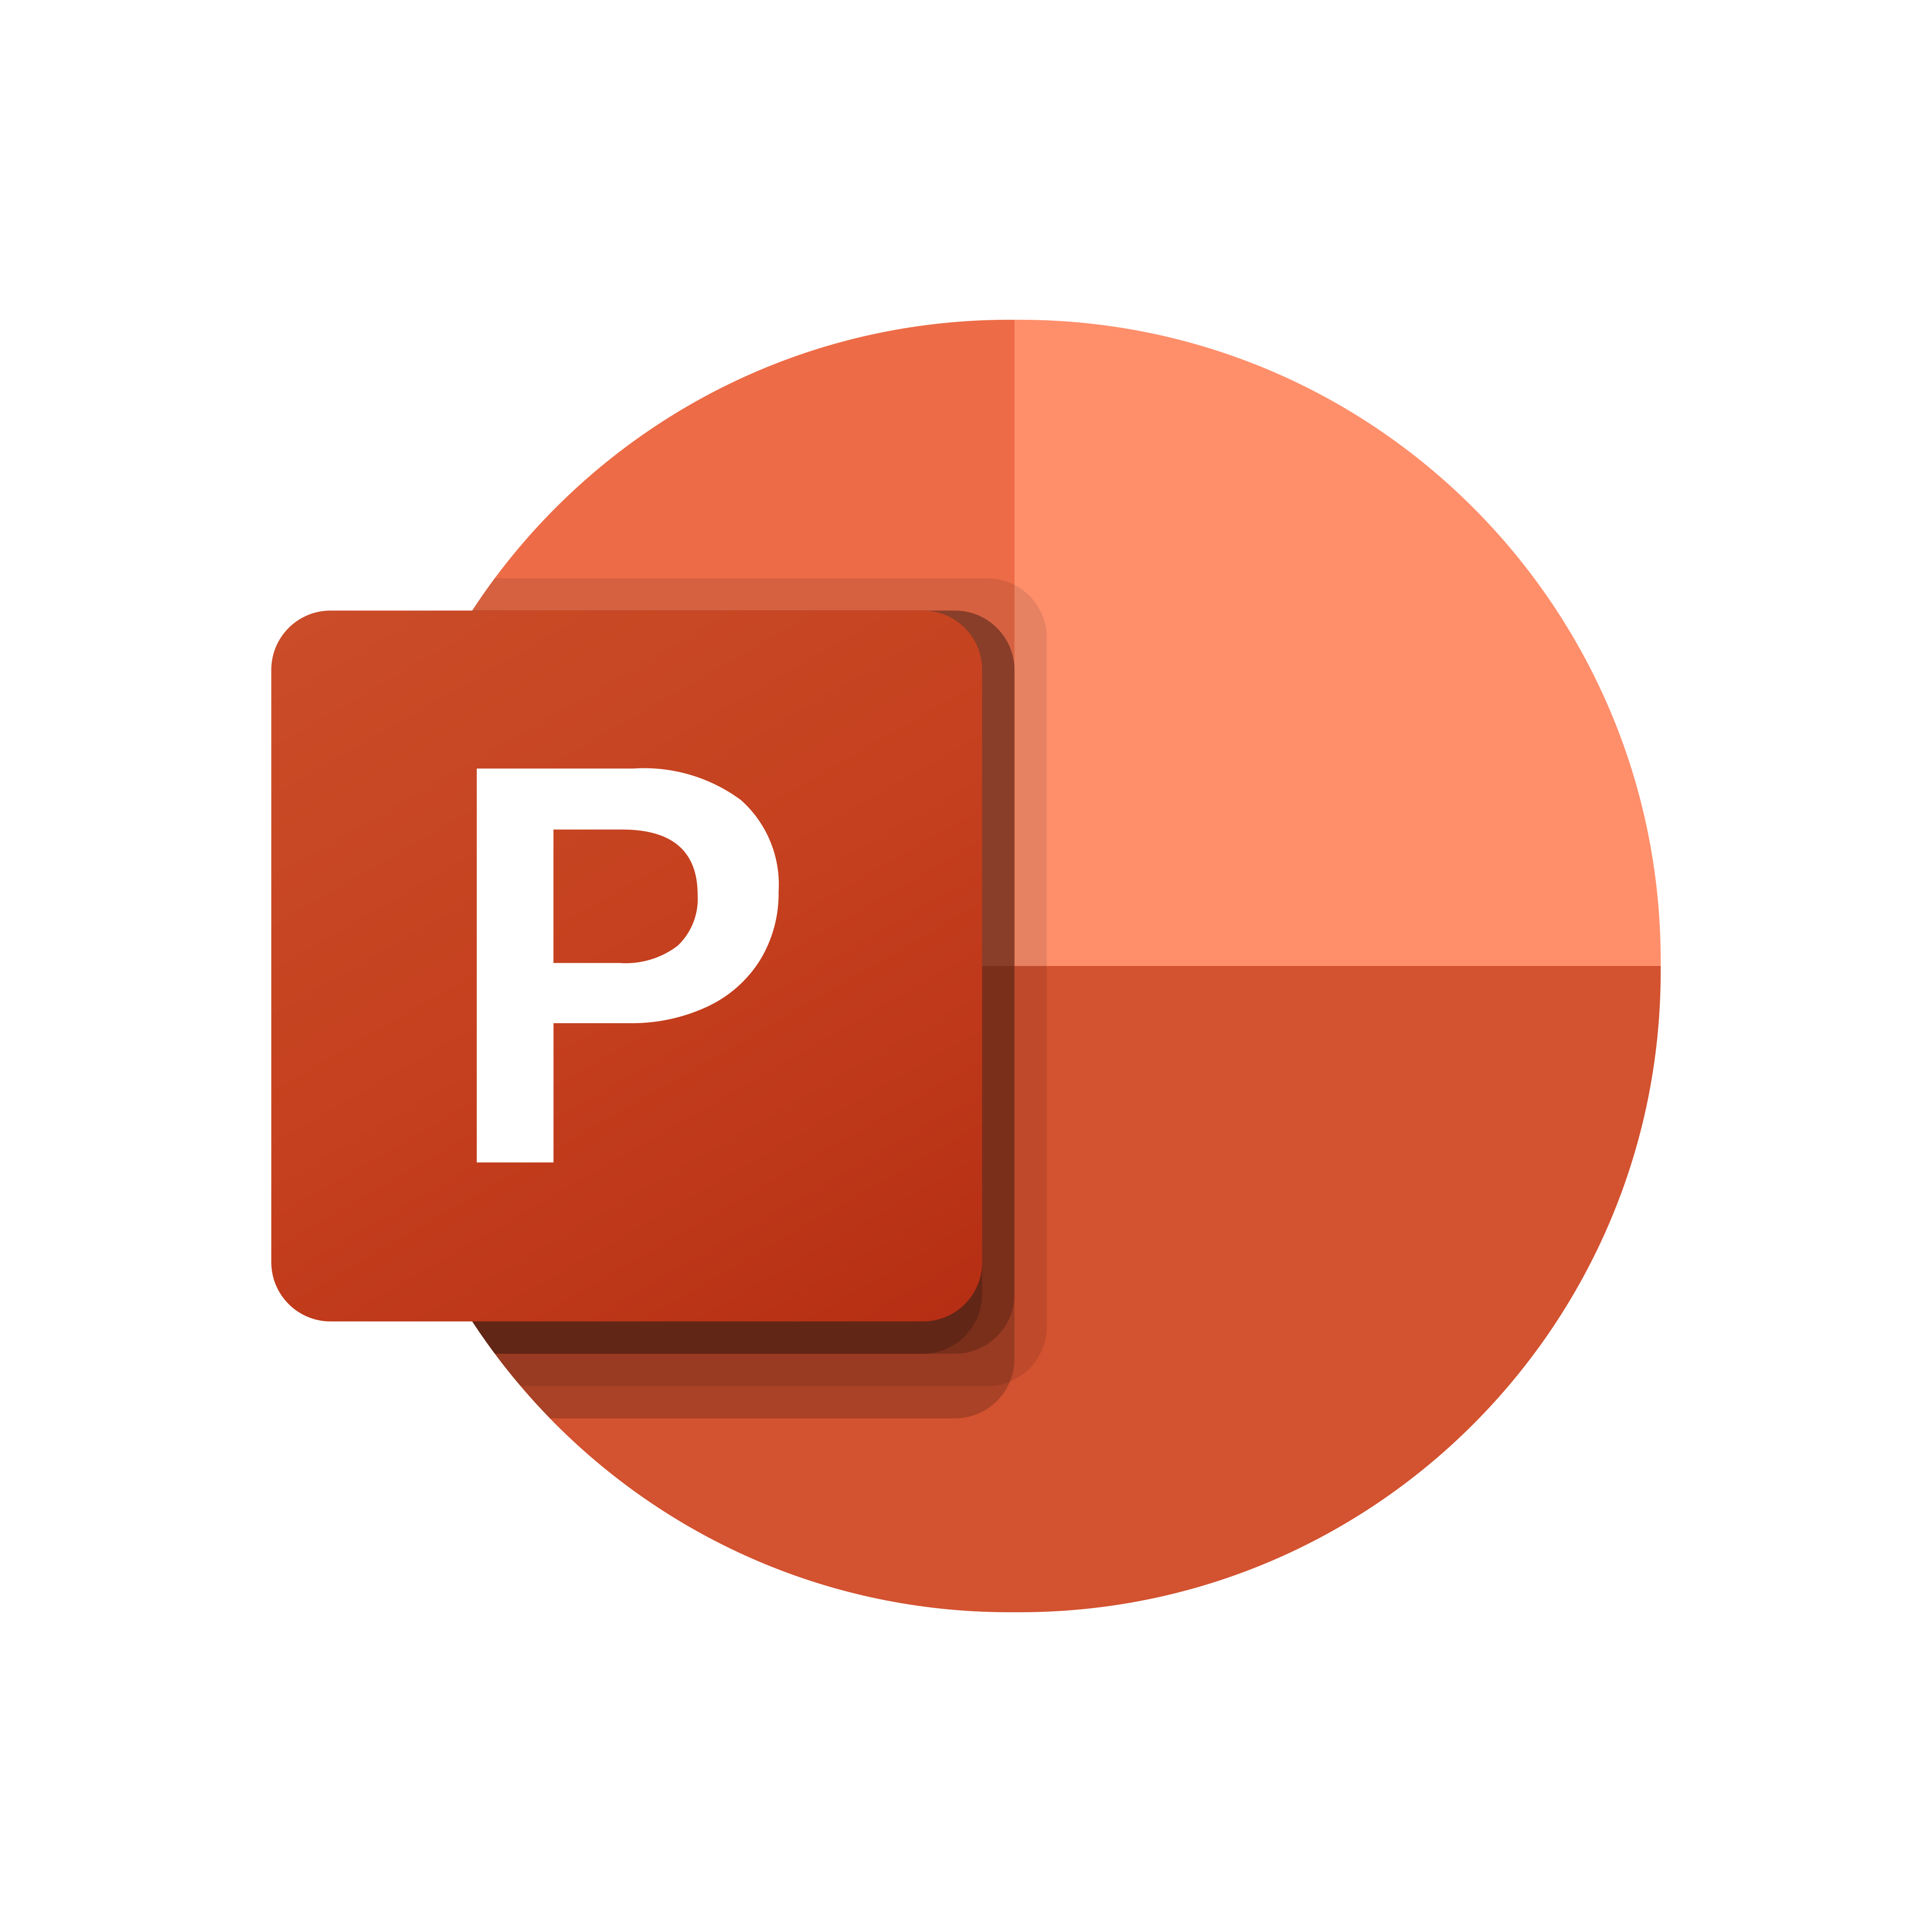 Microsoft Powerpoint Logo Png - KibrisPDR